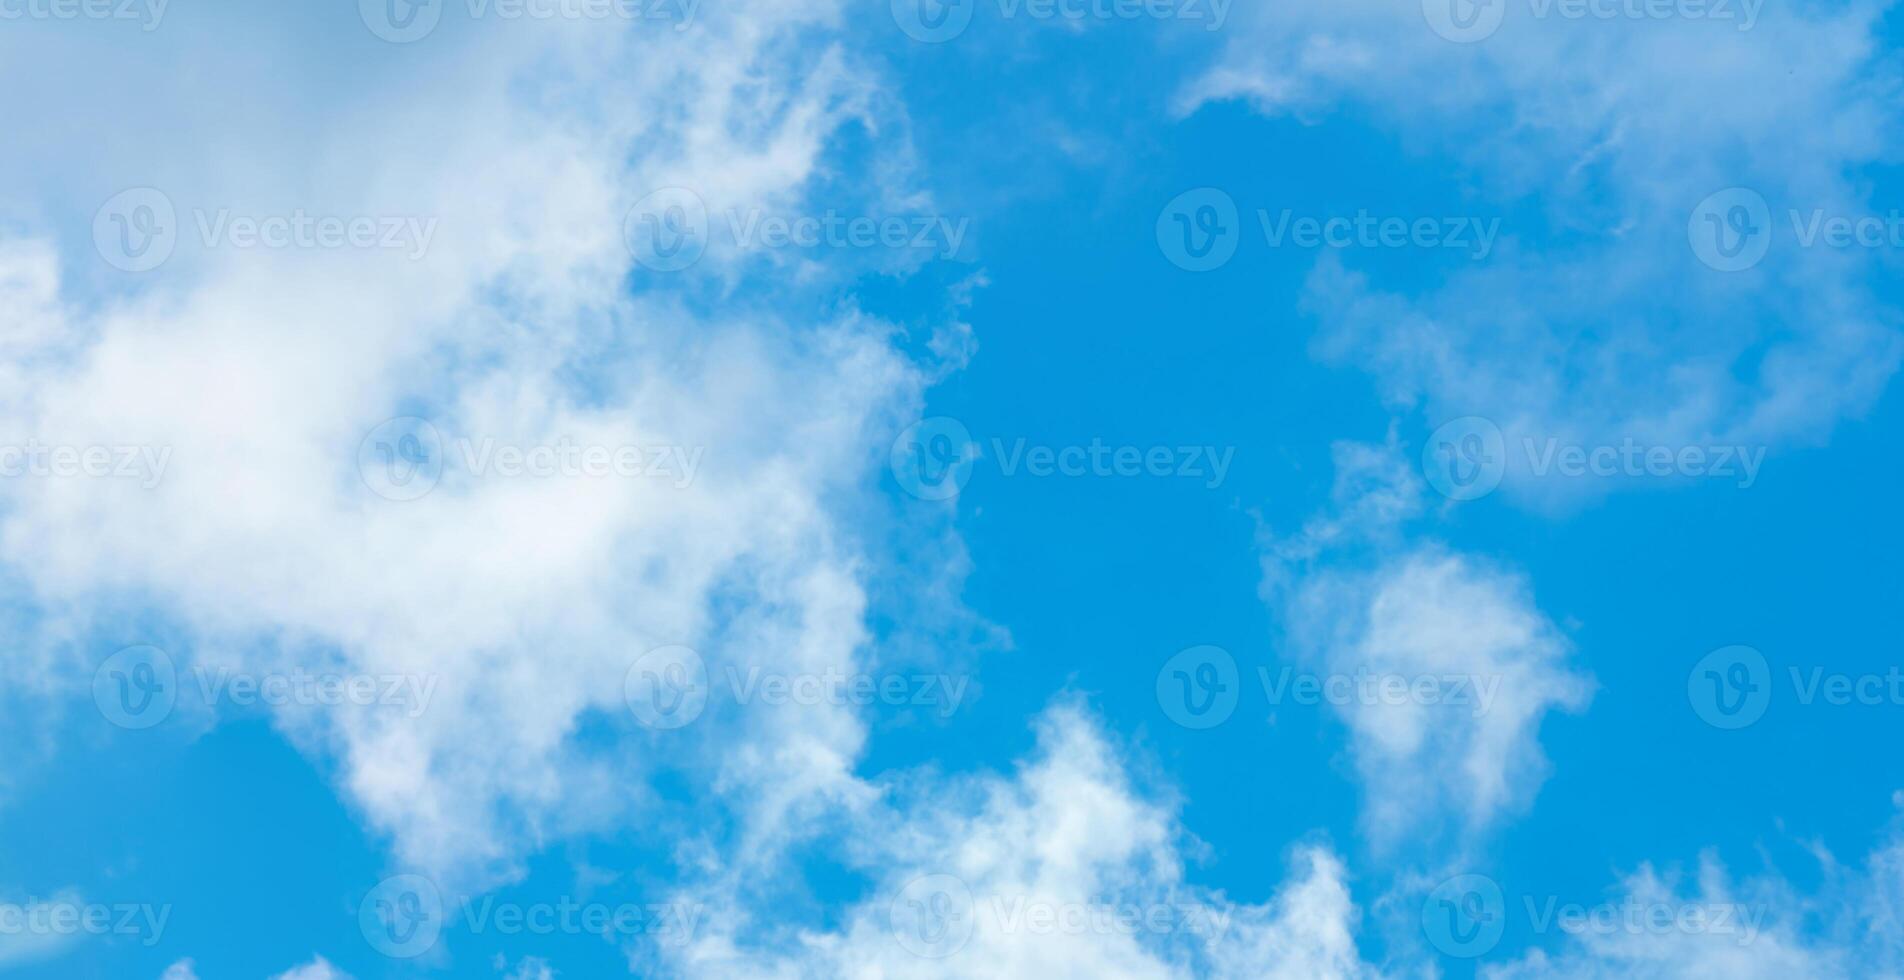 bakgrund, clouds - blå himmel med moln foto